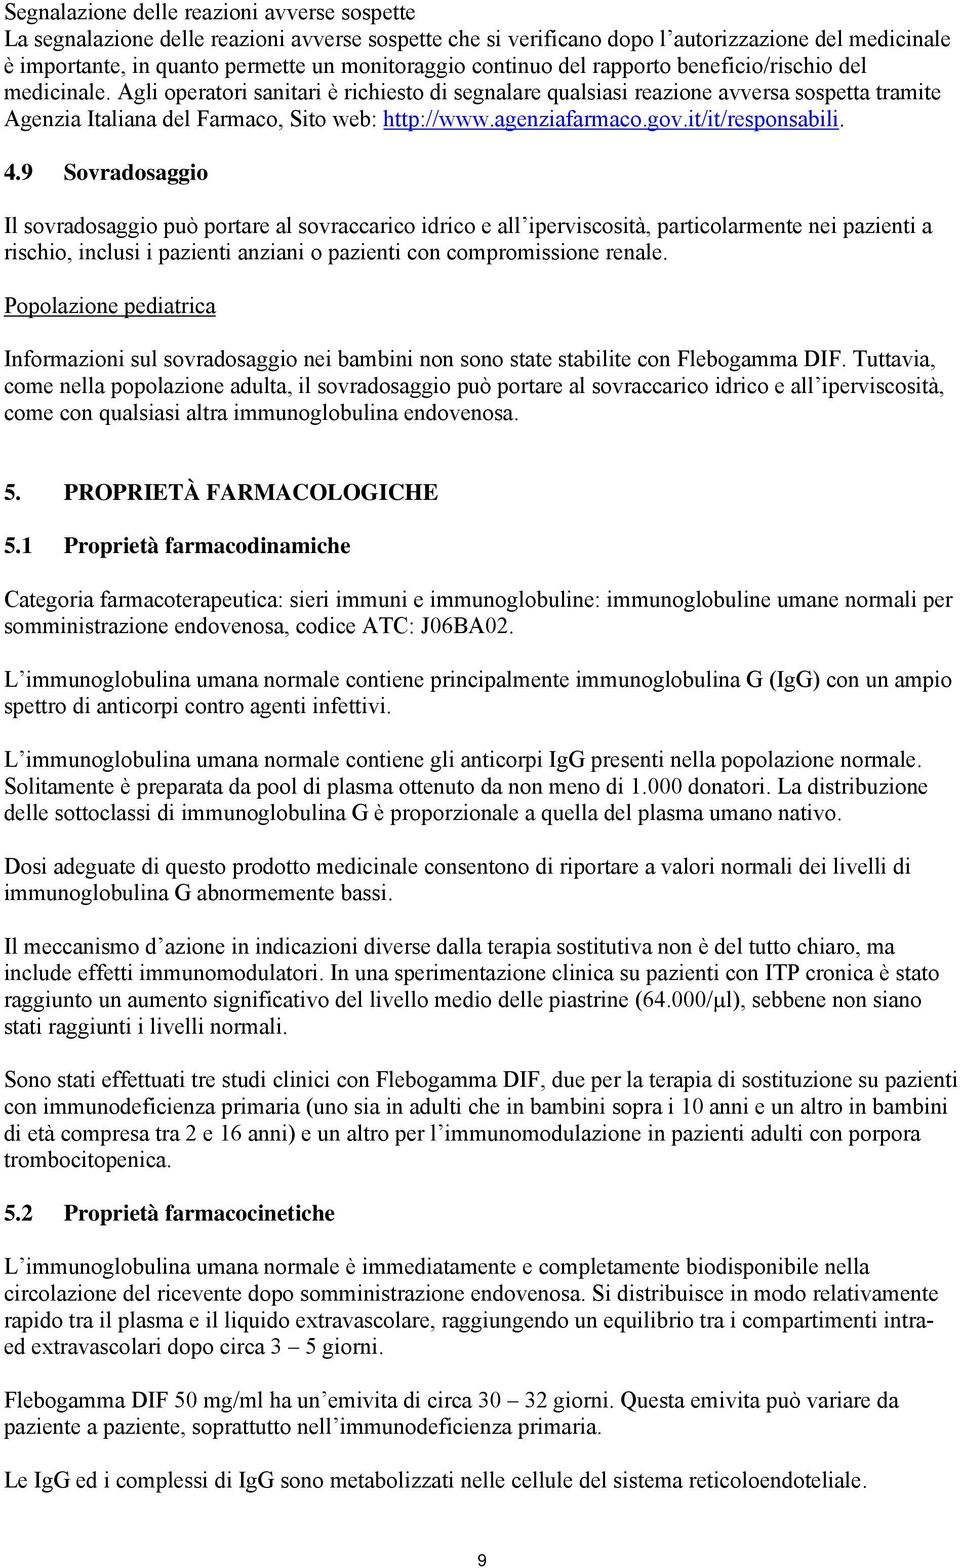 agenziafarmaco.gov.it/it/responsabili. 4.